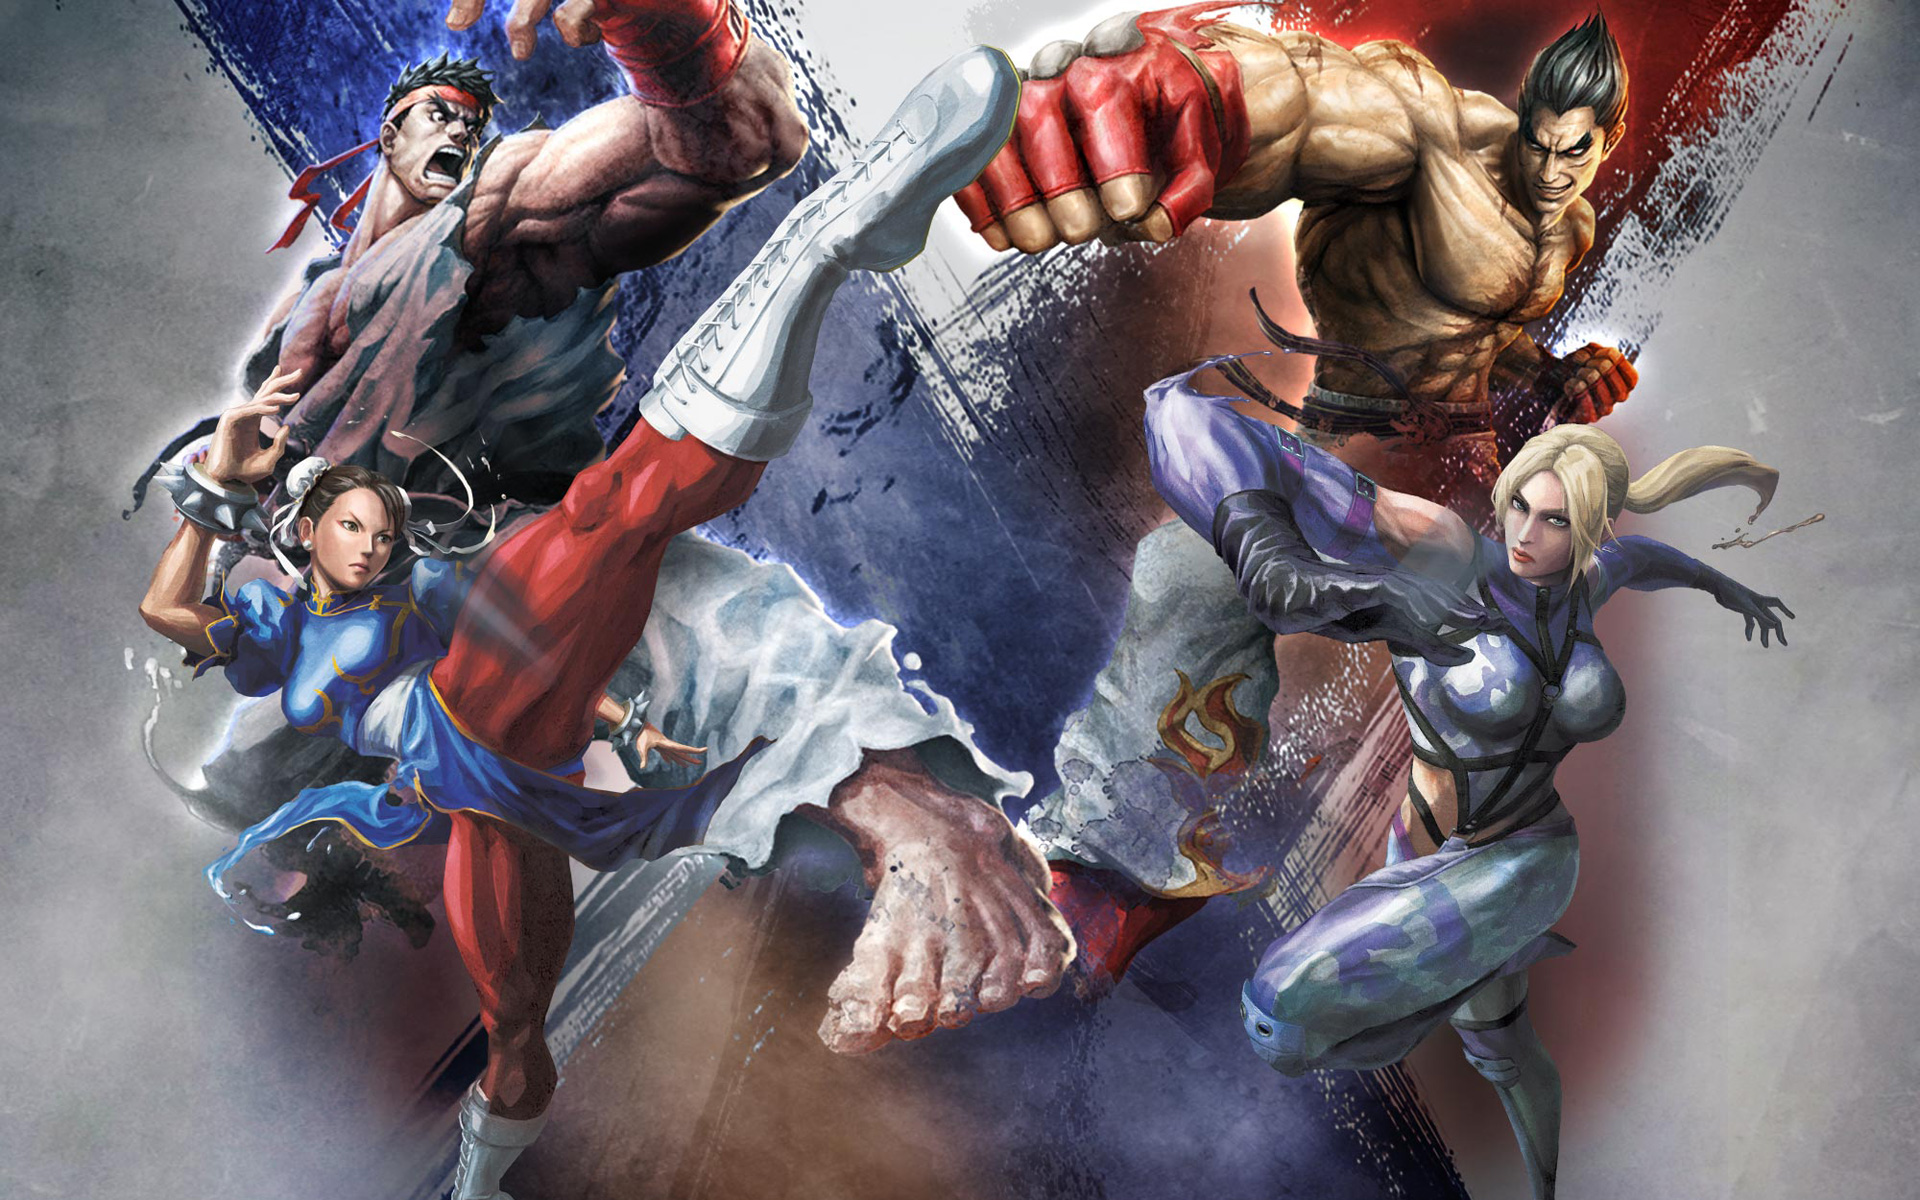 Melhores papéis de parede de Street Fighter X Tekken para tela do telefone